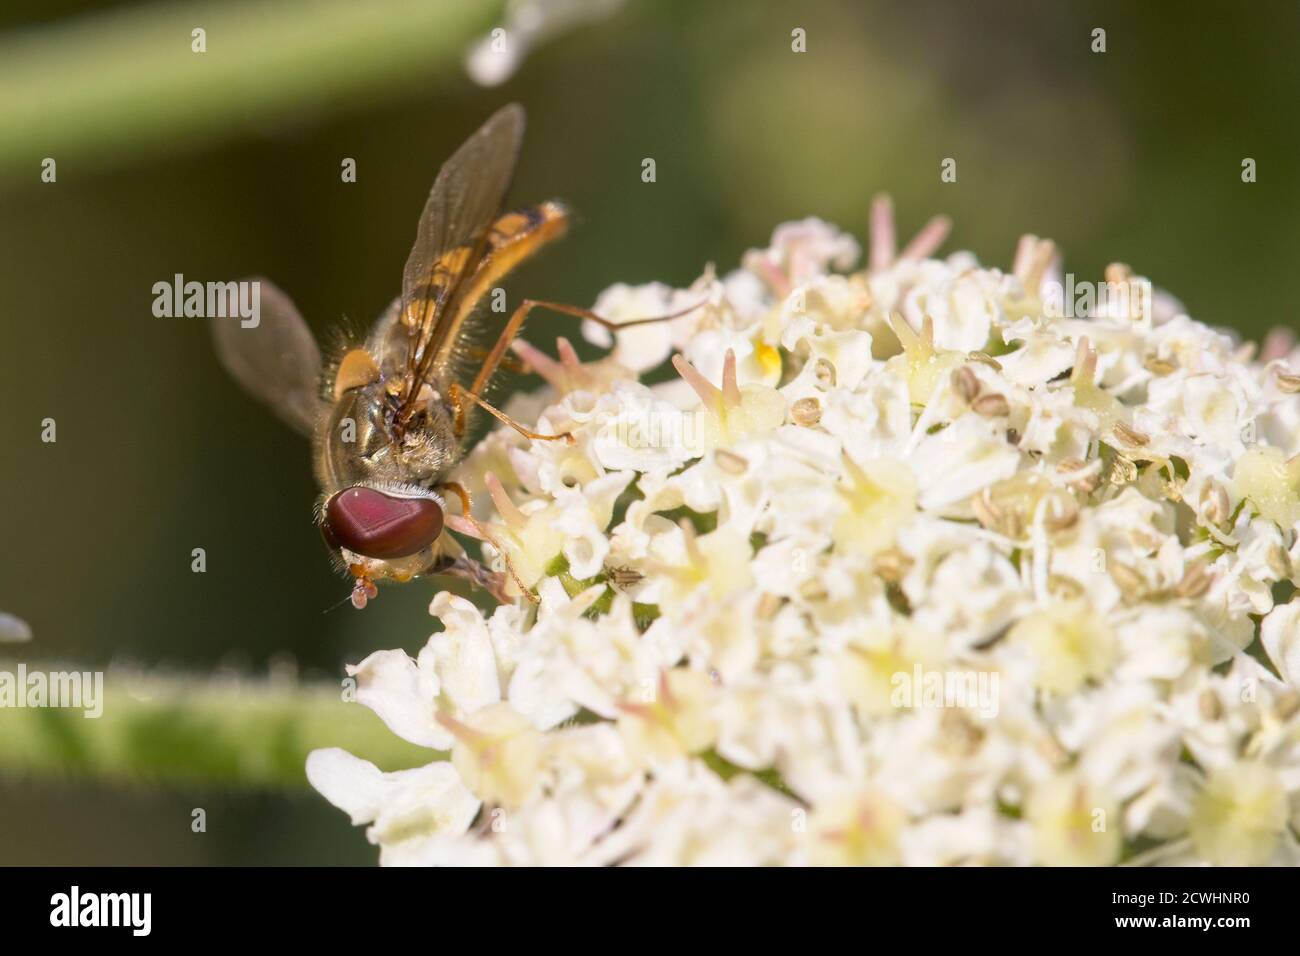 Specie di hoverfly su una testa di fiore, Cornovaglia, Inghilterra, Regno Unito. Foto Stock